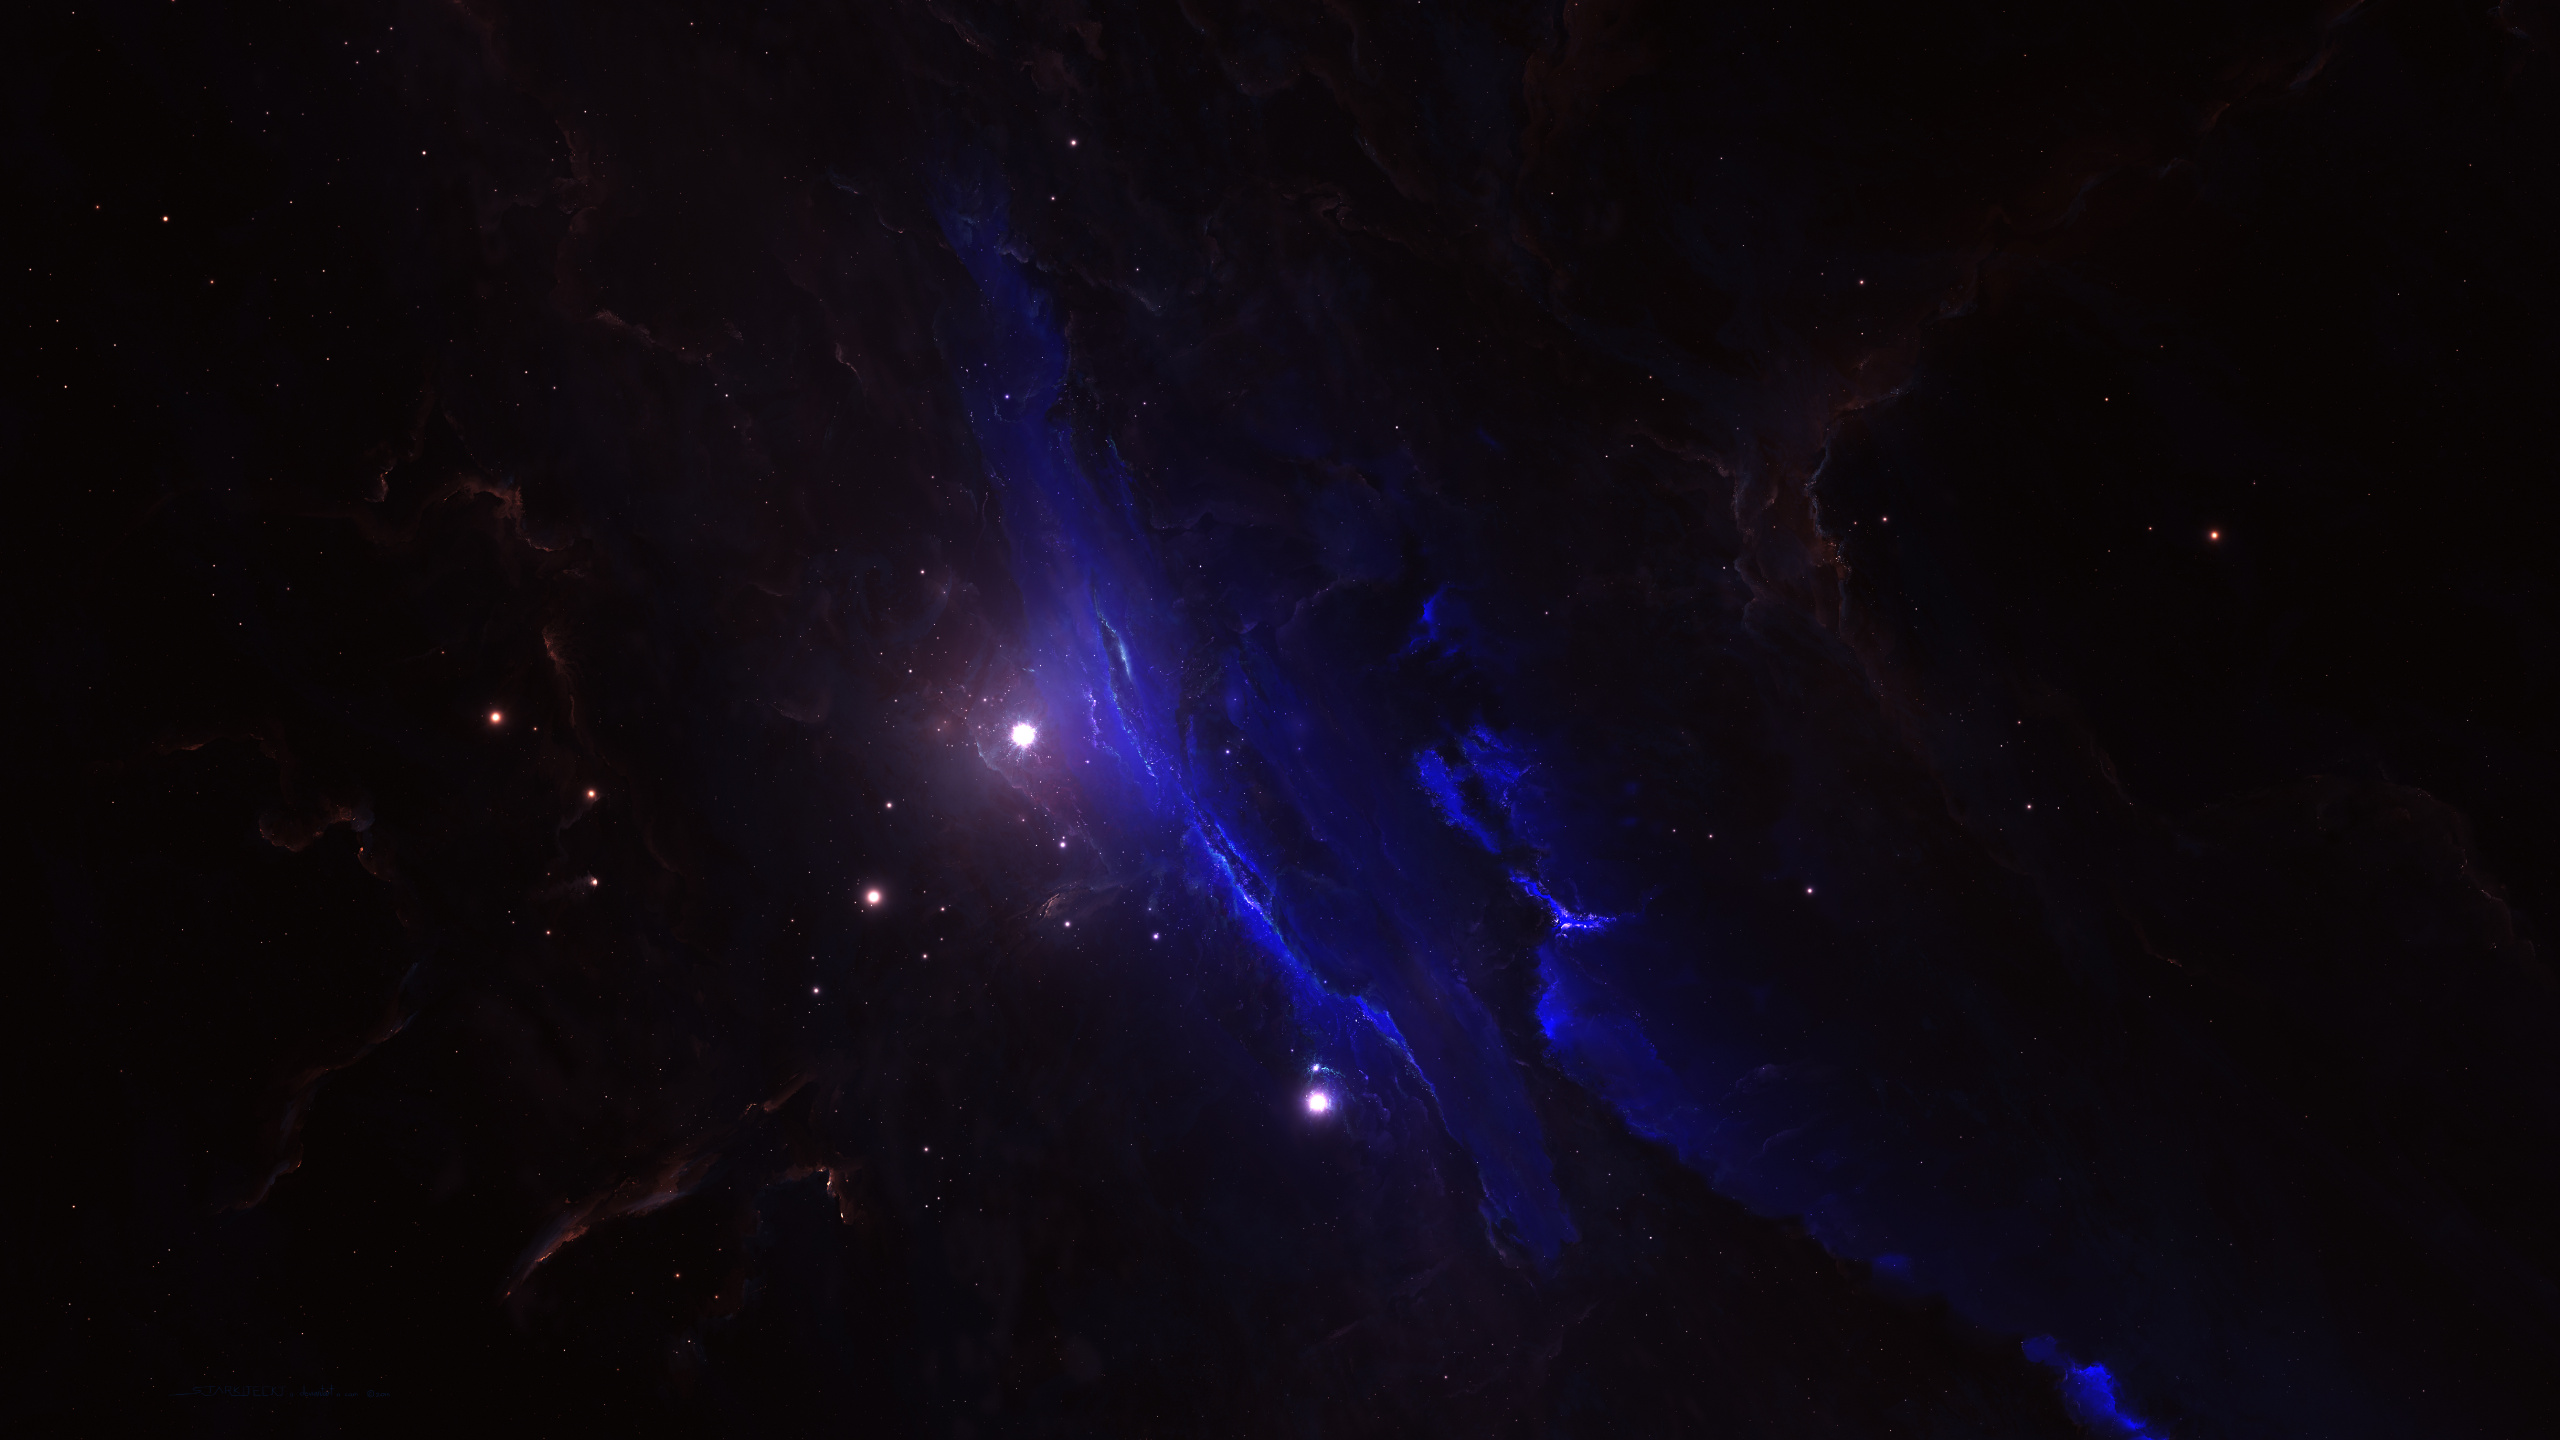 Blaue Und Weiße Galaxieillustration. Wallpaper in 2560x1440 Resolution